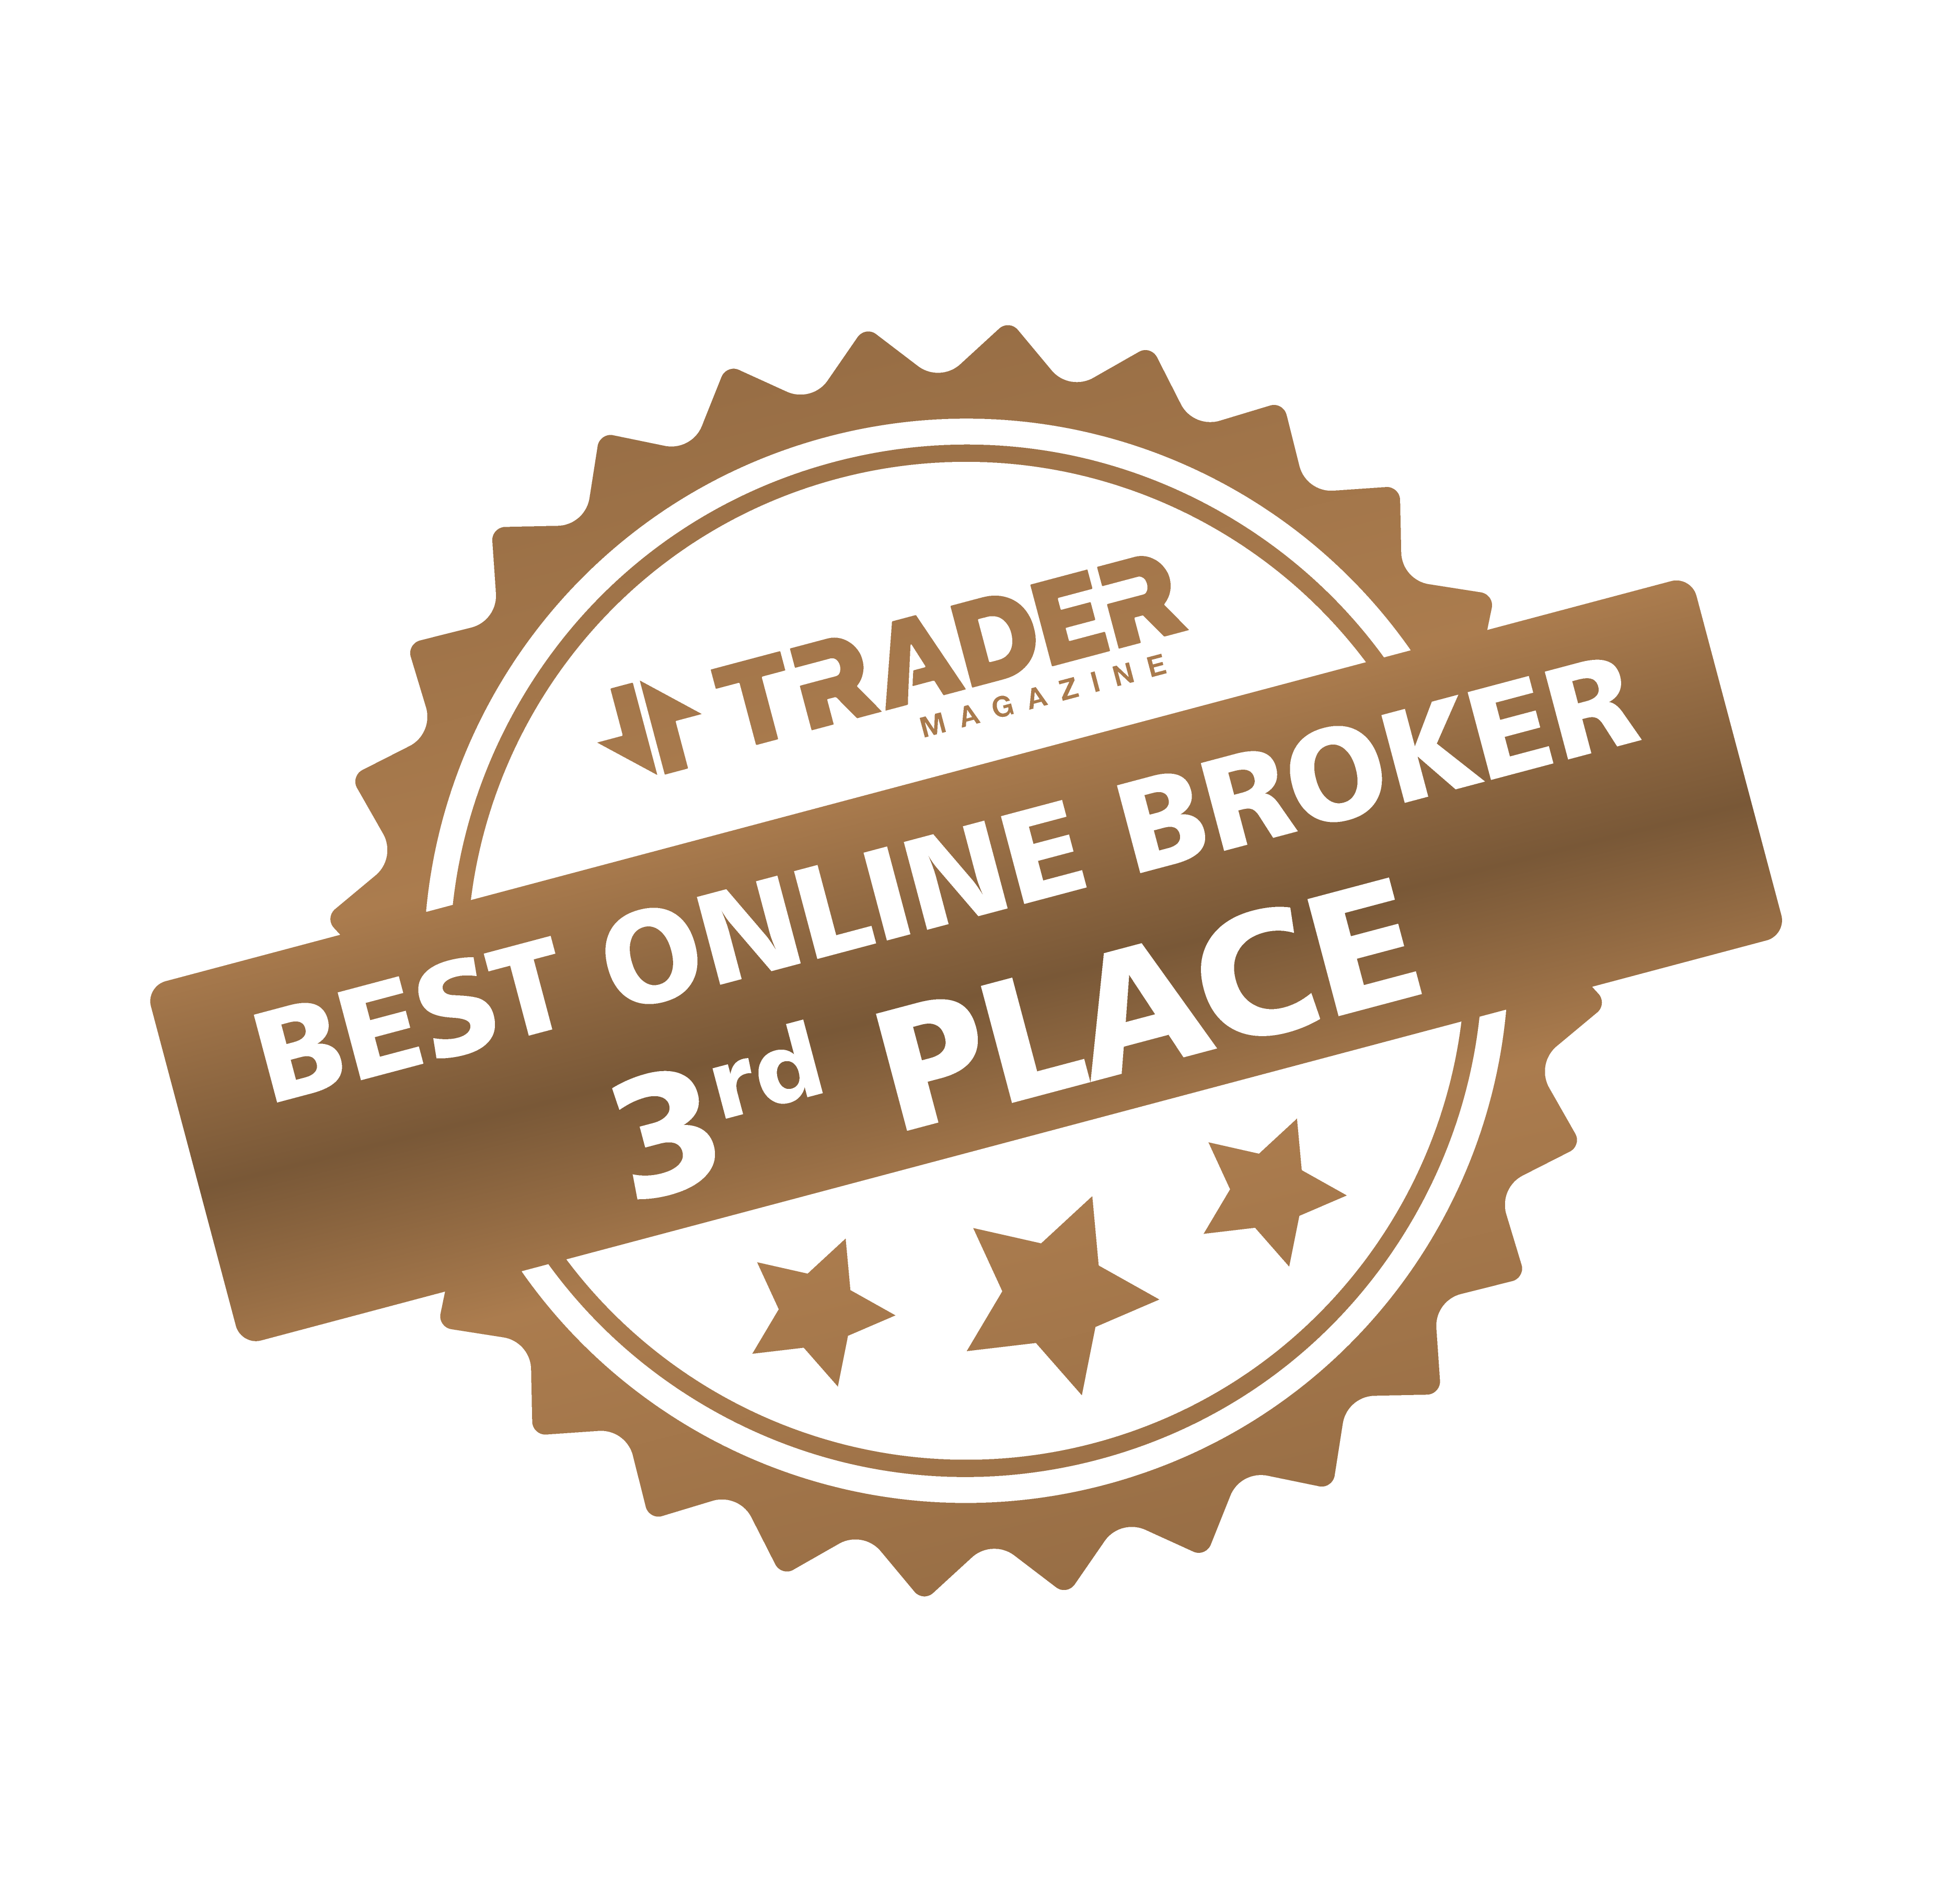 Golden Brokers ranked 3rd in the Best Online Broker poll